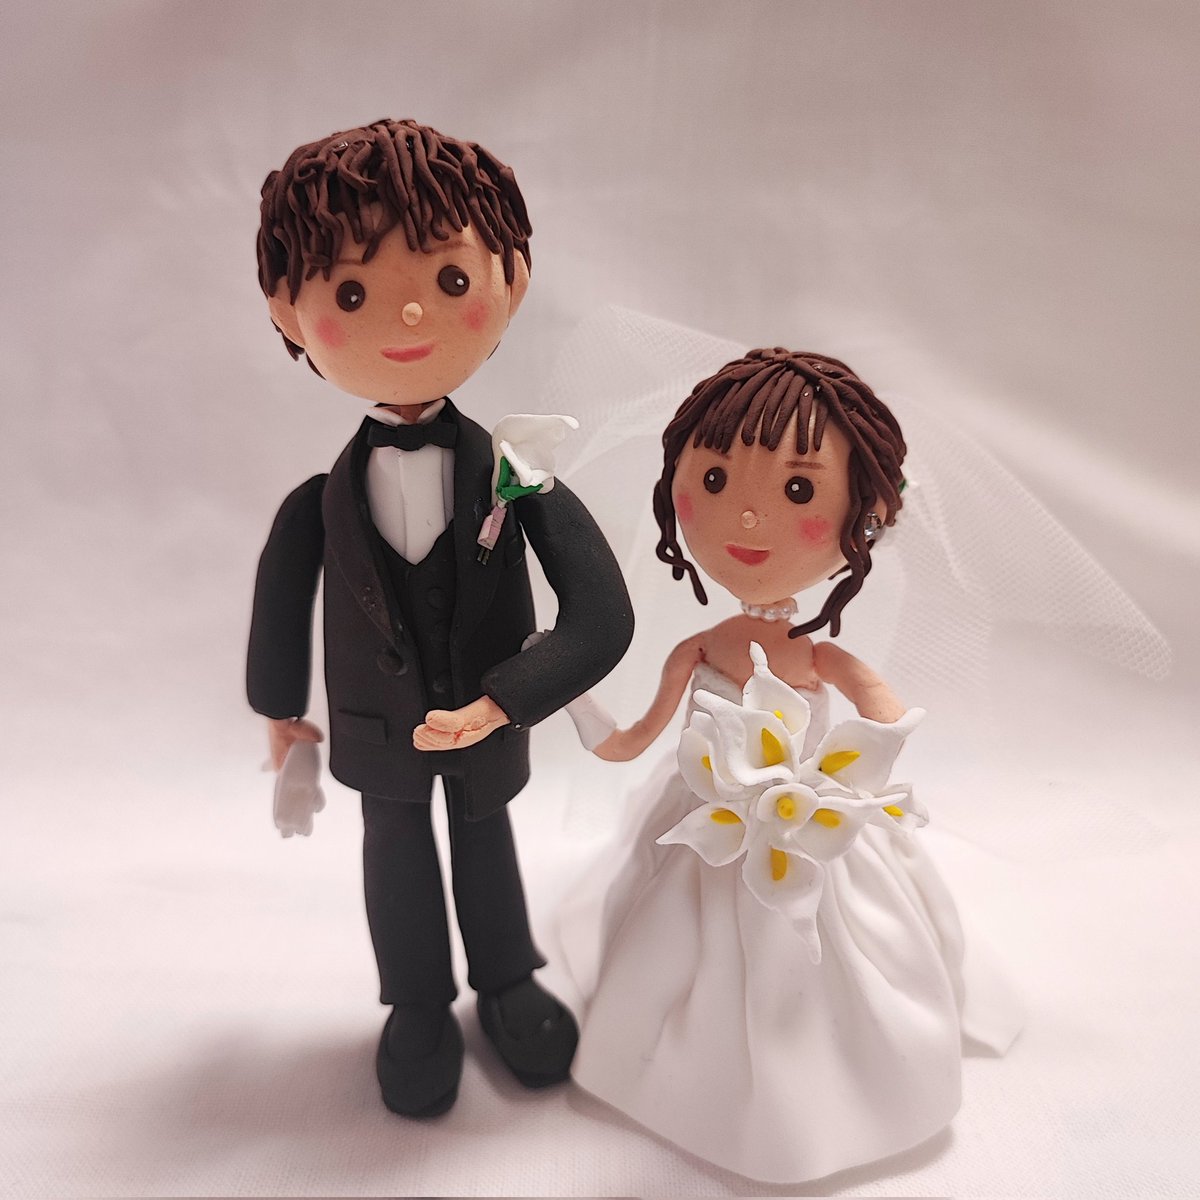 長女の結婚式💒に作ったwedding doll

.
#粘土人形 #clay #claydoll #ハーティクレイ #クレイドール #heartyclay #poteputi #ウェディングドール #weddingdoll #ウェルカムドール #welcomedoll #welcomespace #welcomeboard